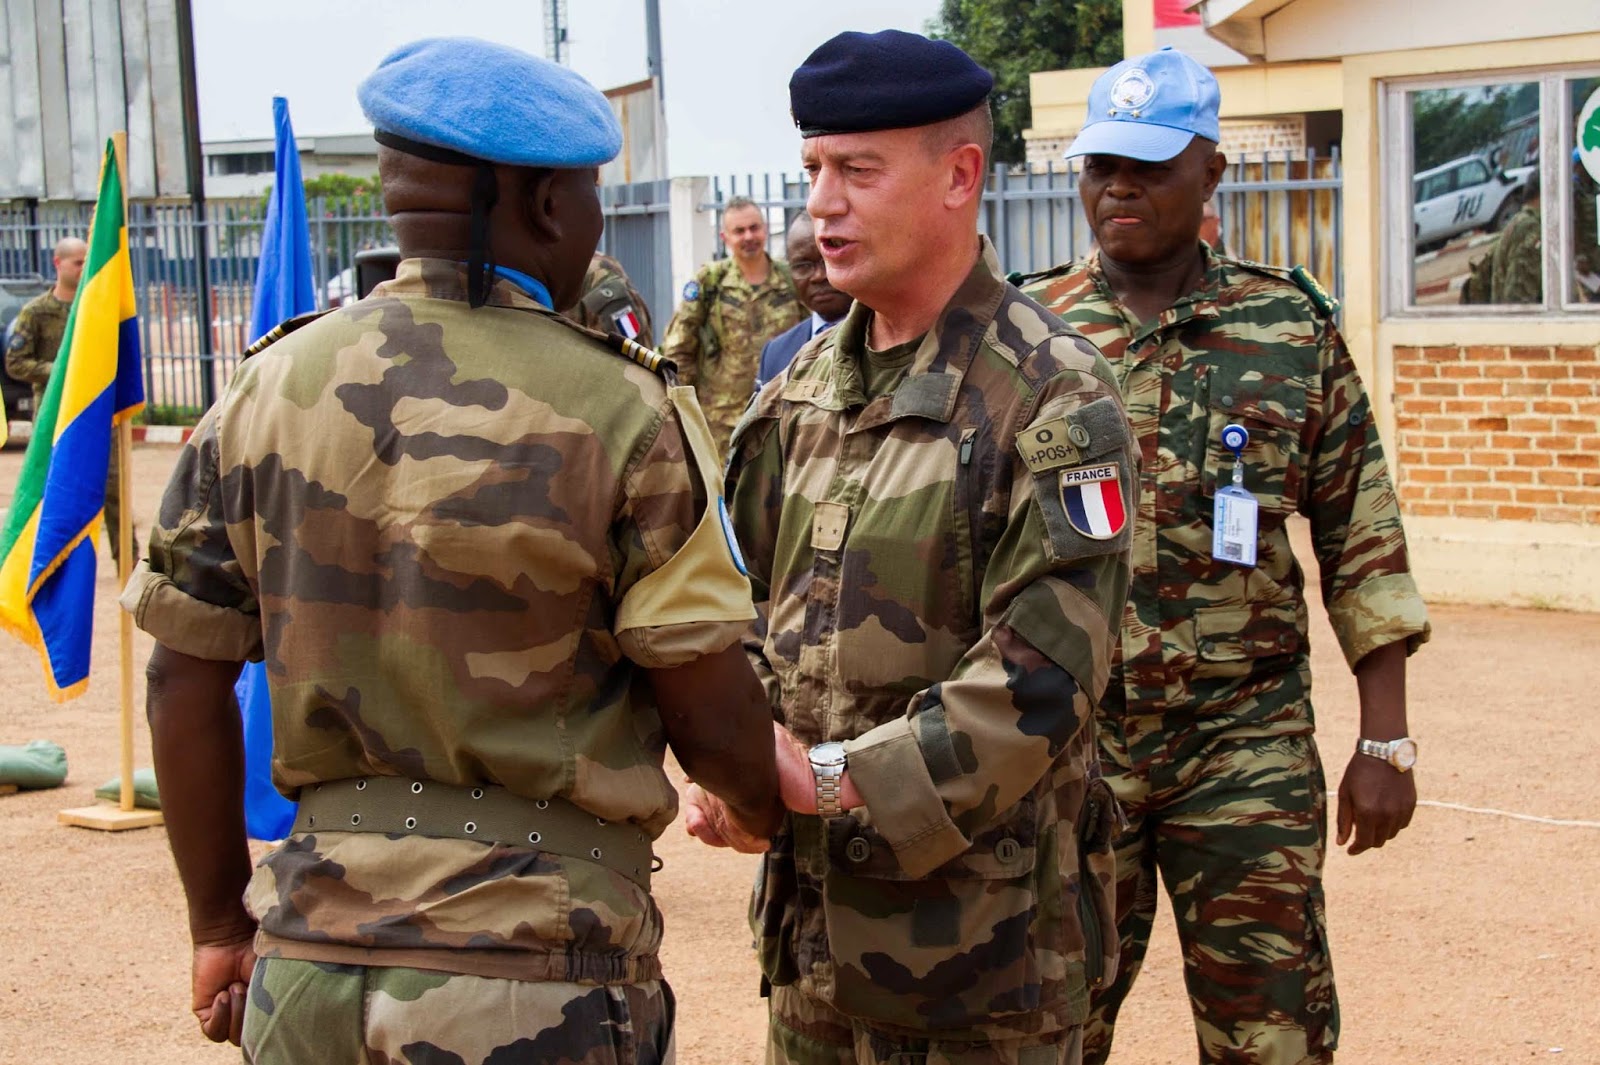 Ευρωπαϊκό Στρατηγείο Λάρισας: «Αποστολή Εξετελέσθη!» Παραδόθηκε εν χρόνω η ασφάλεια του διεθνούς αεροδρομίου του Bangui στις δυνάμεις των Ηνωμένων Εθνών MINUSCA - Φωτογραφία 2